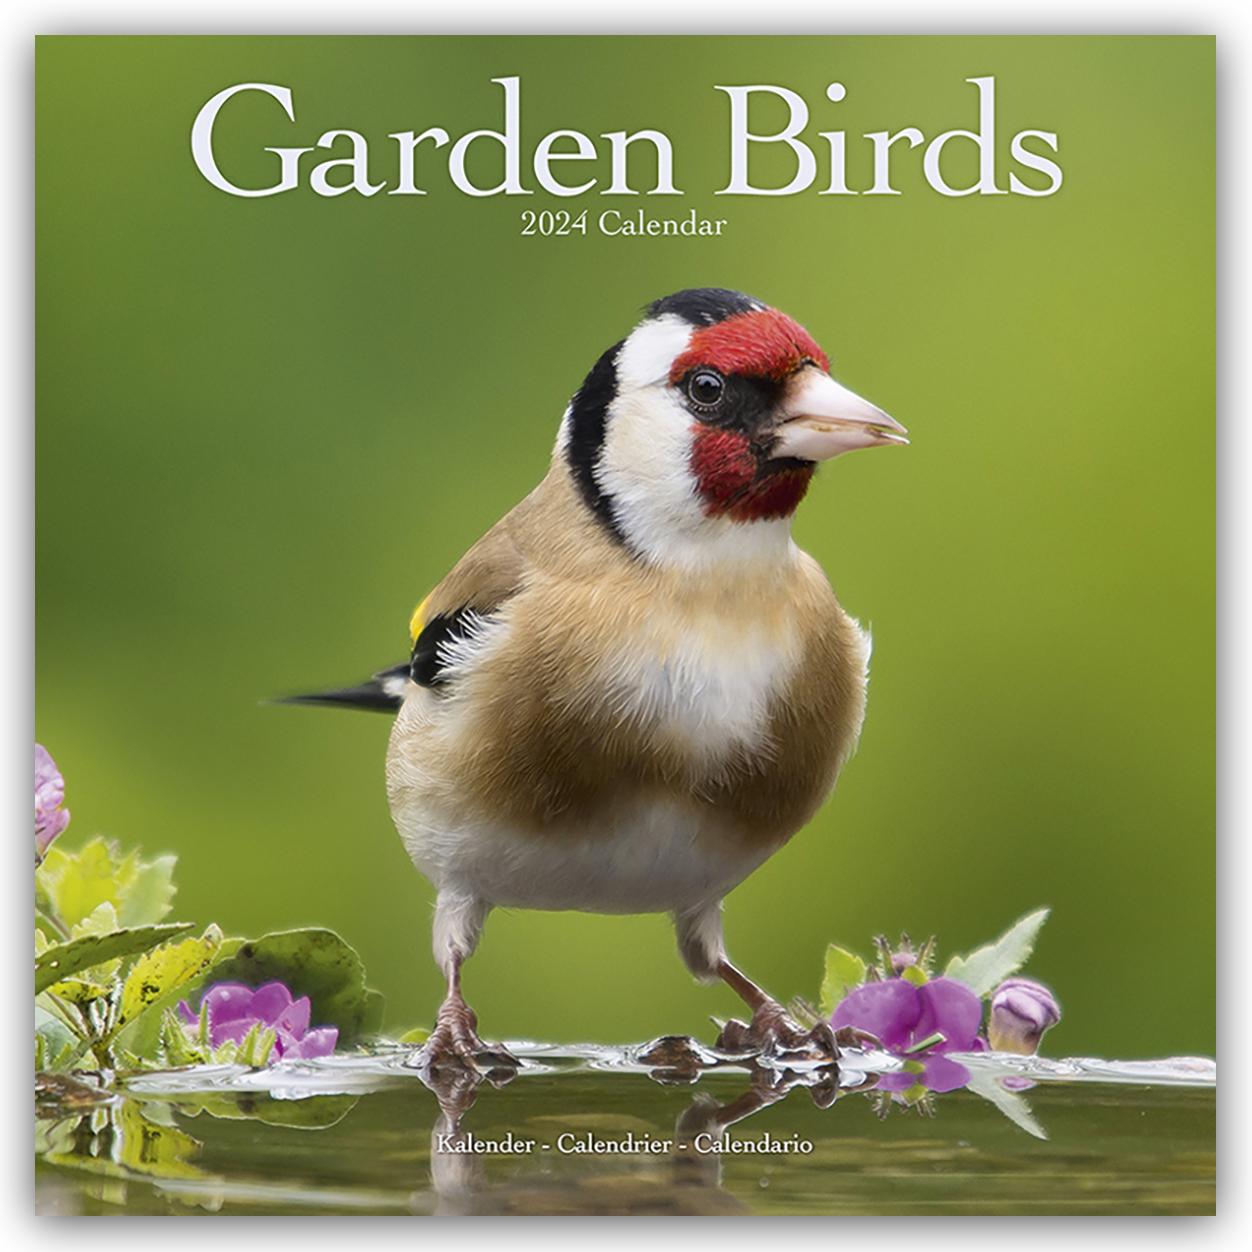 Calendar/Diary Garden Birds Calendar 2024  Square Birds Wall Calendar - 16 Month 